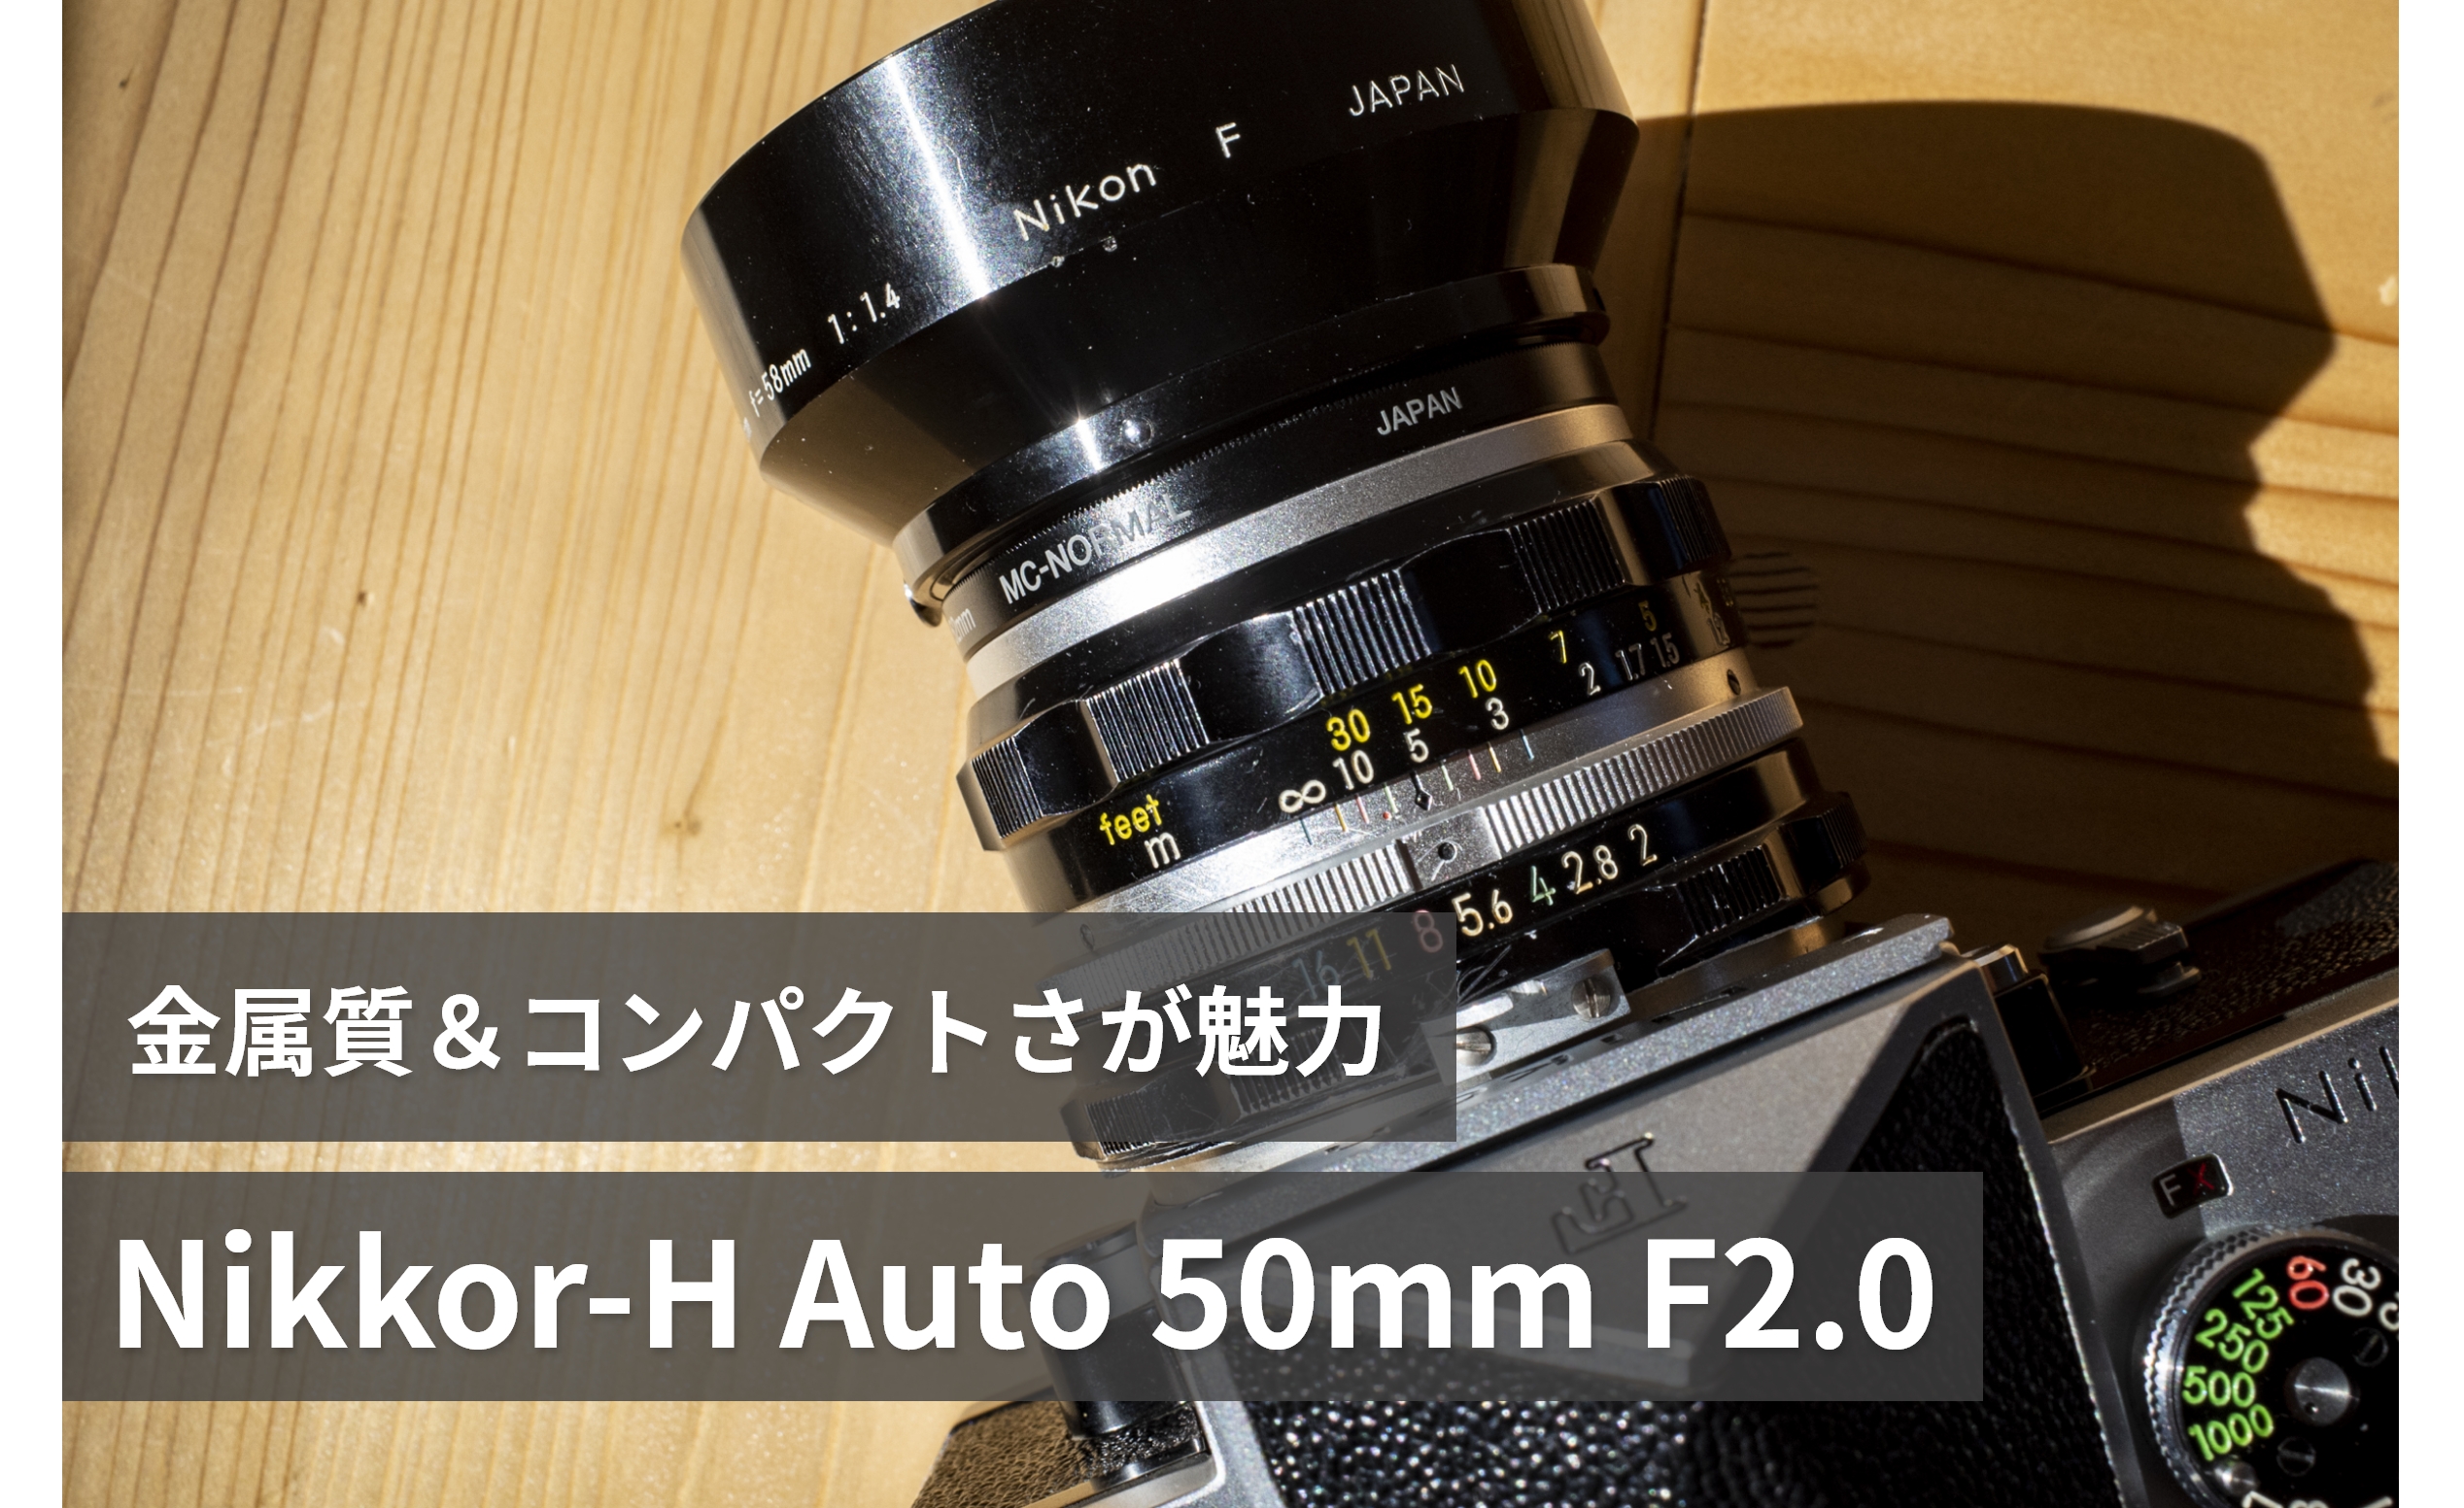 ニコンNikkor-H Auto 50mm F2.0